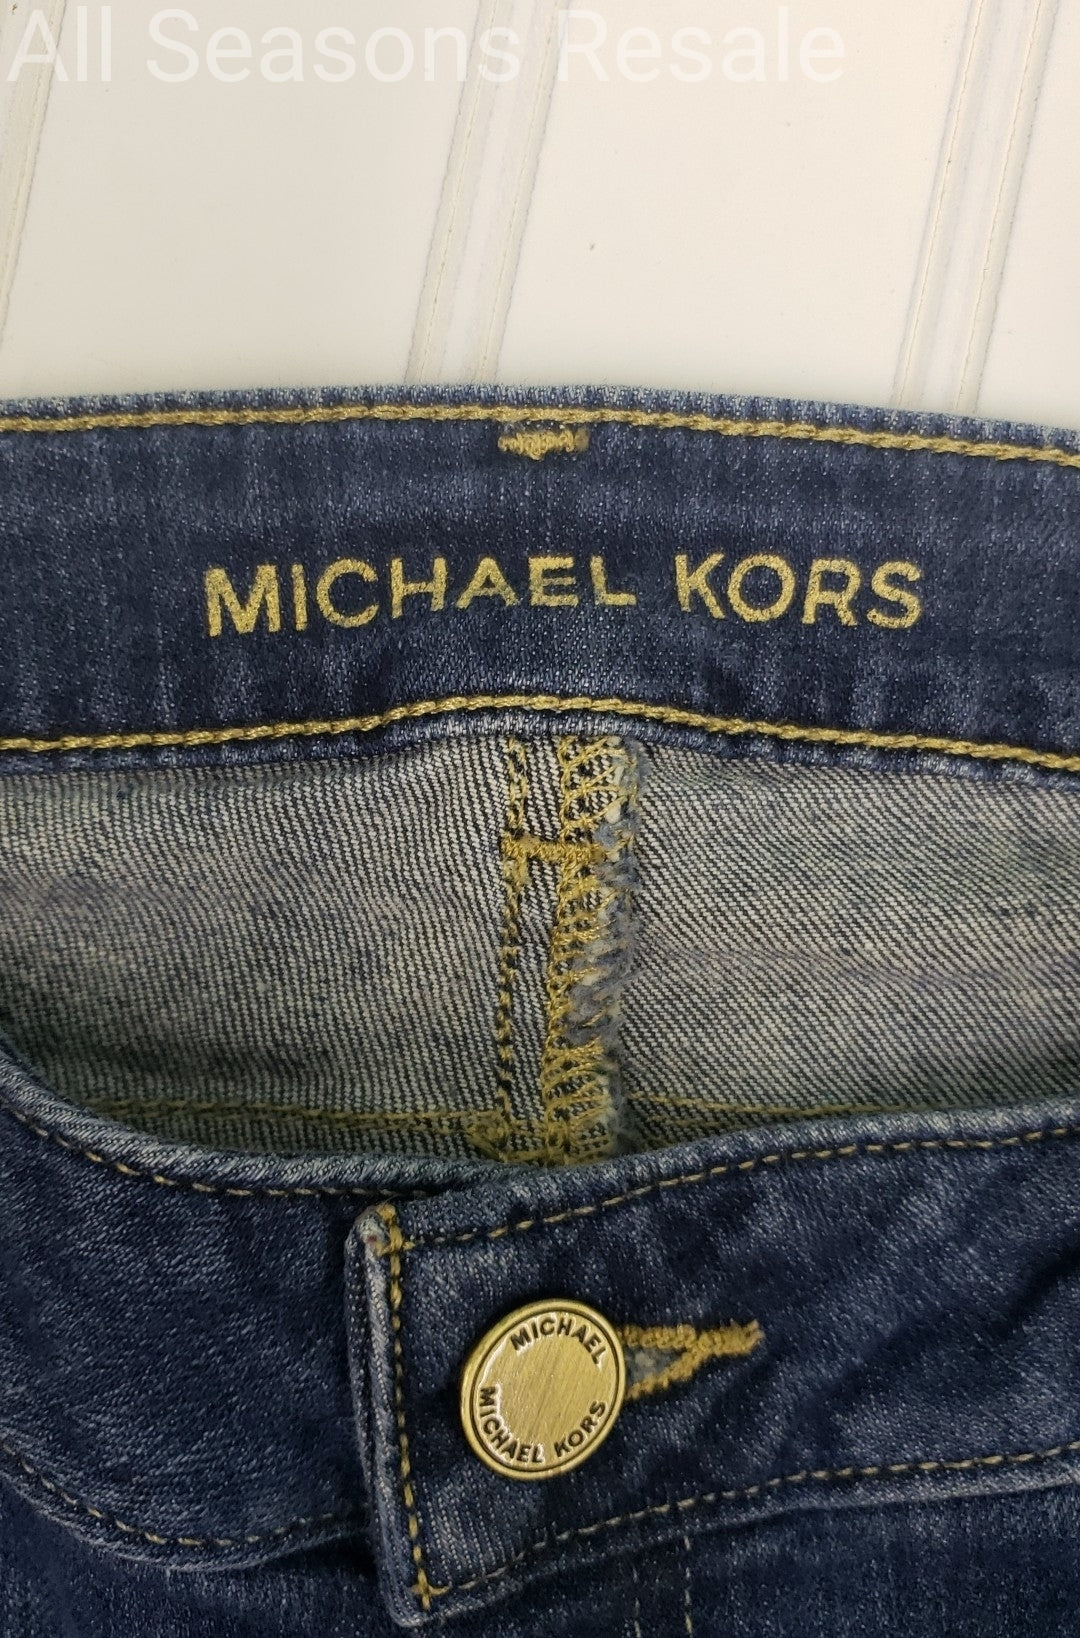 Michael Kors Jet Set Skinny Jeans Size 8 2B